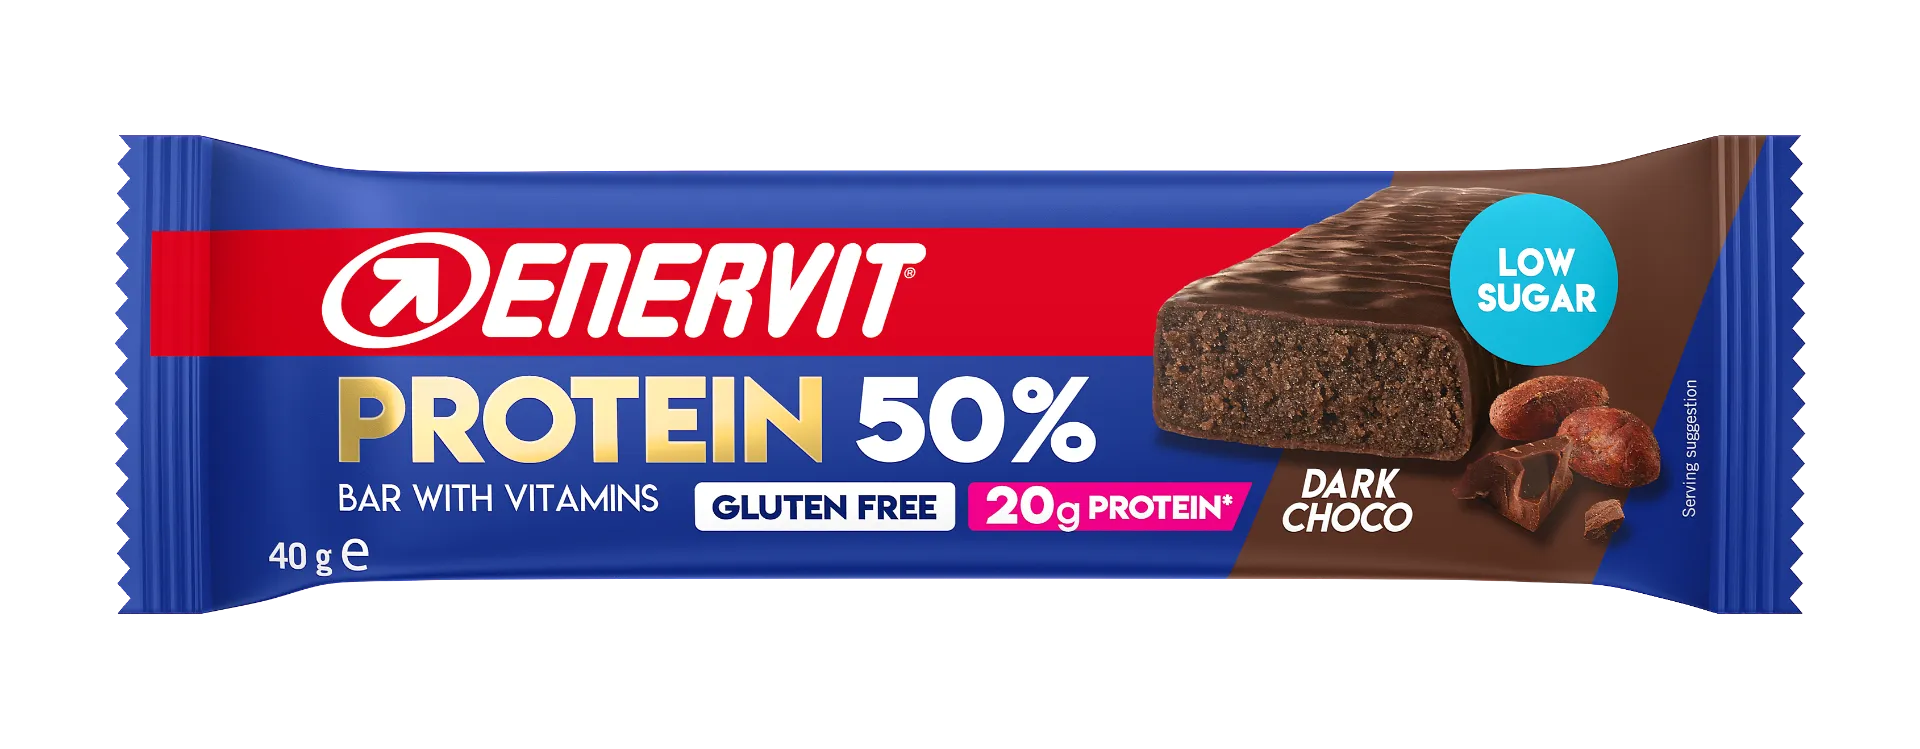 ENERVIT SPORT PROTEIN BAR 50% BARRETTA DARK CHOCOLATE 40 G